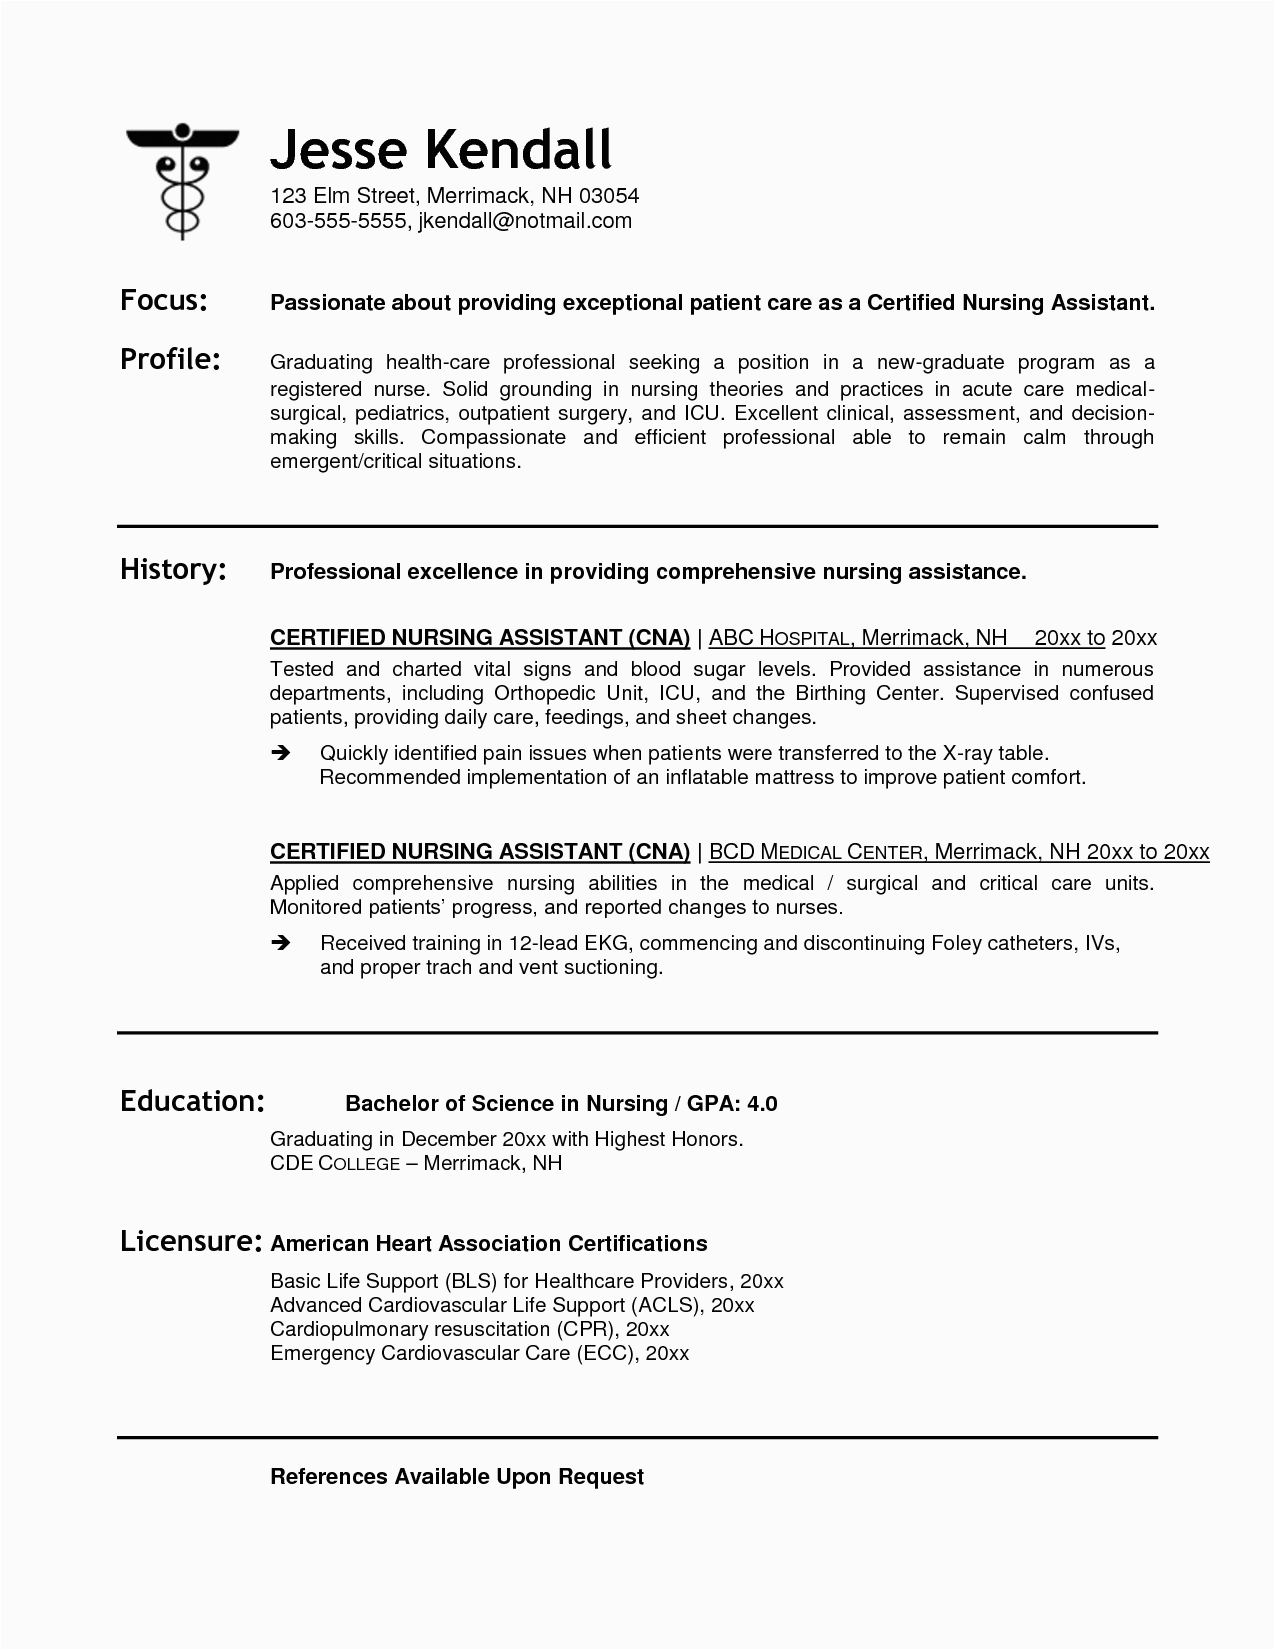 Nurse Sample Resume with Job Description 12 13 Sample Resume for Nurses with Job Description